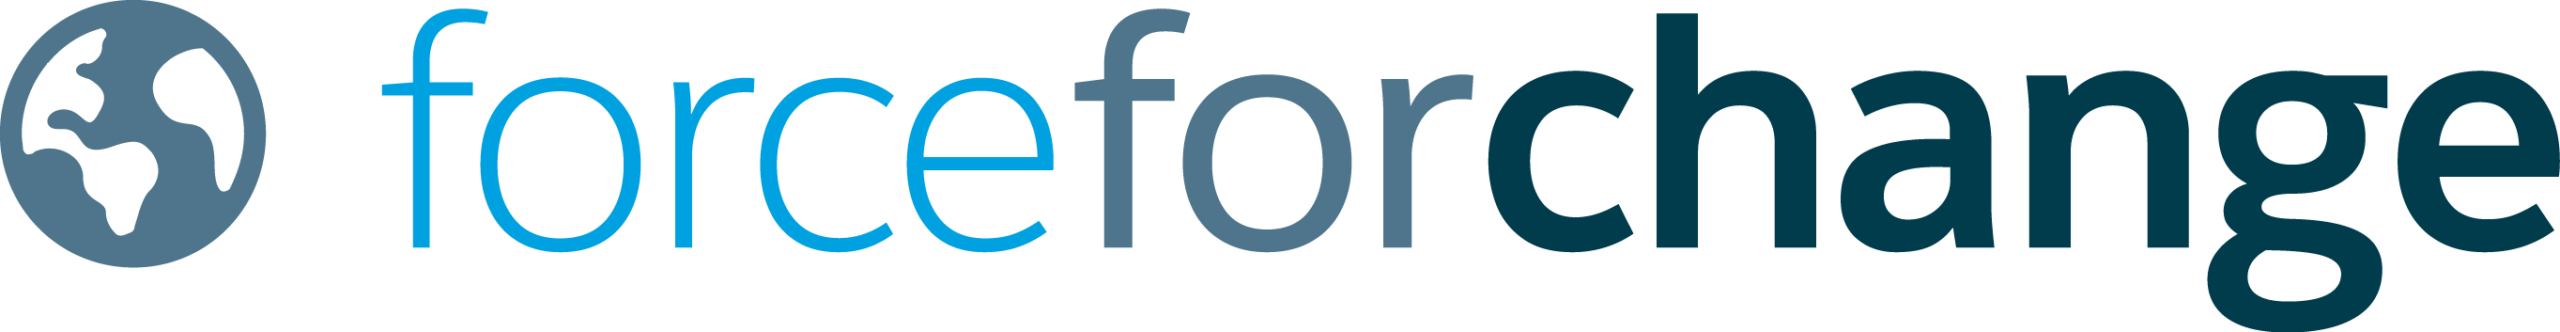 Salesforce.com's "Force for Change" Award (2007)